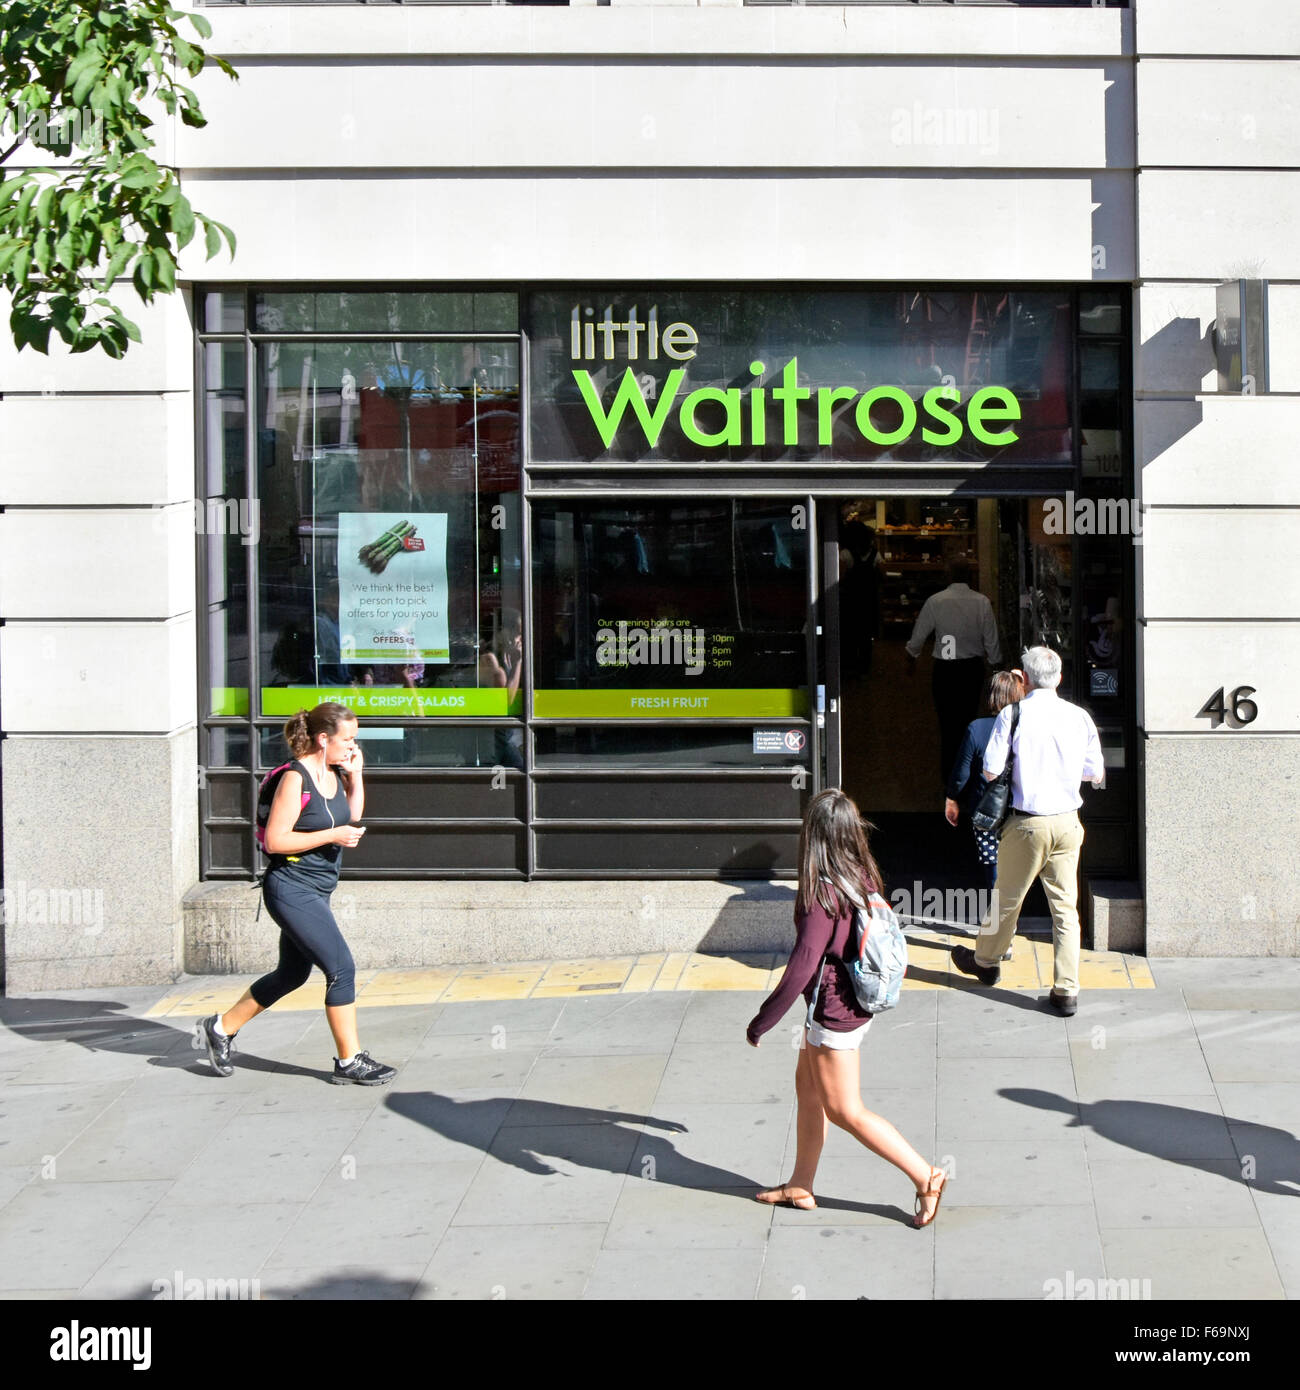 Little Waitrose logo avant de boutique et vue de signe de marque d'en haut pratique pour les nombreux employés de bureau situés à proximité de la ville de Londres Angleterre Royaume-Uni Banque D'Images